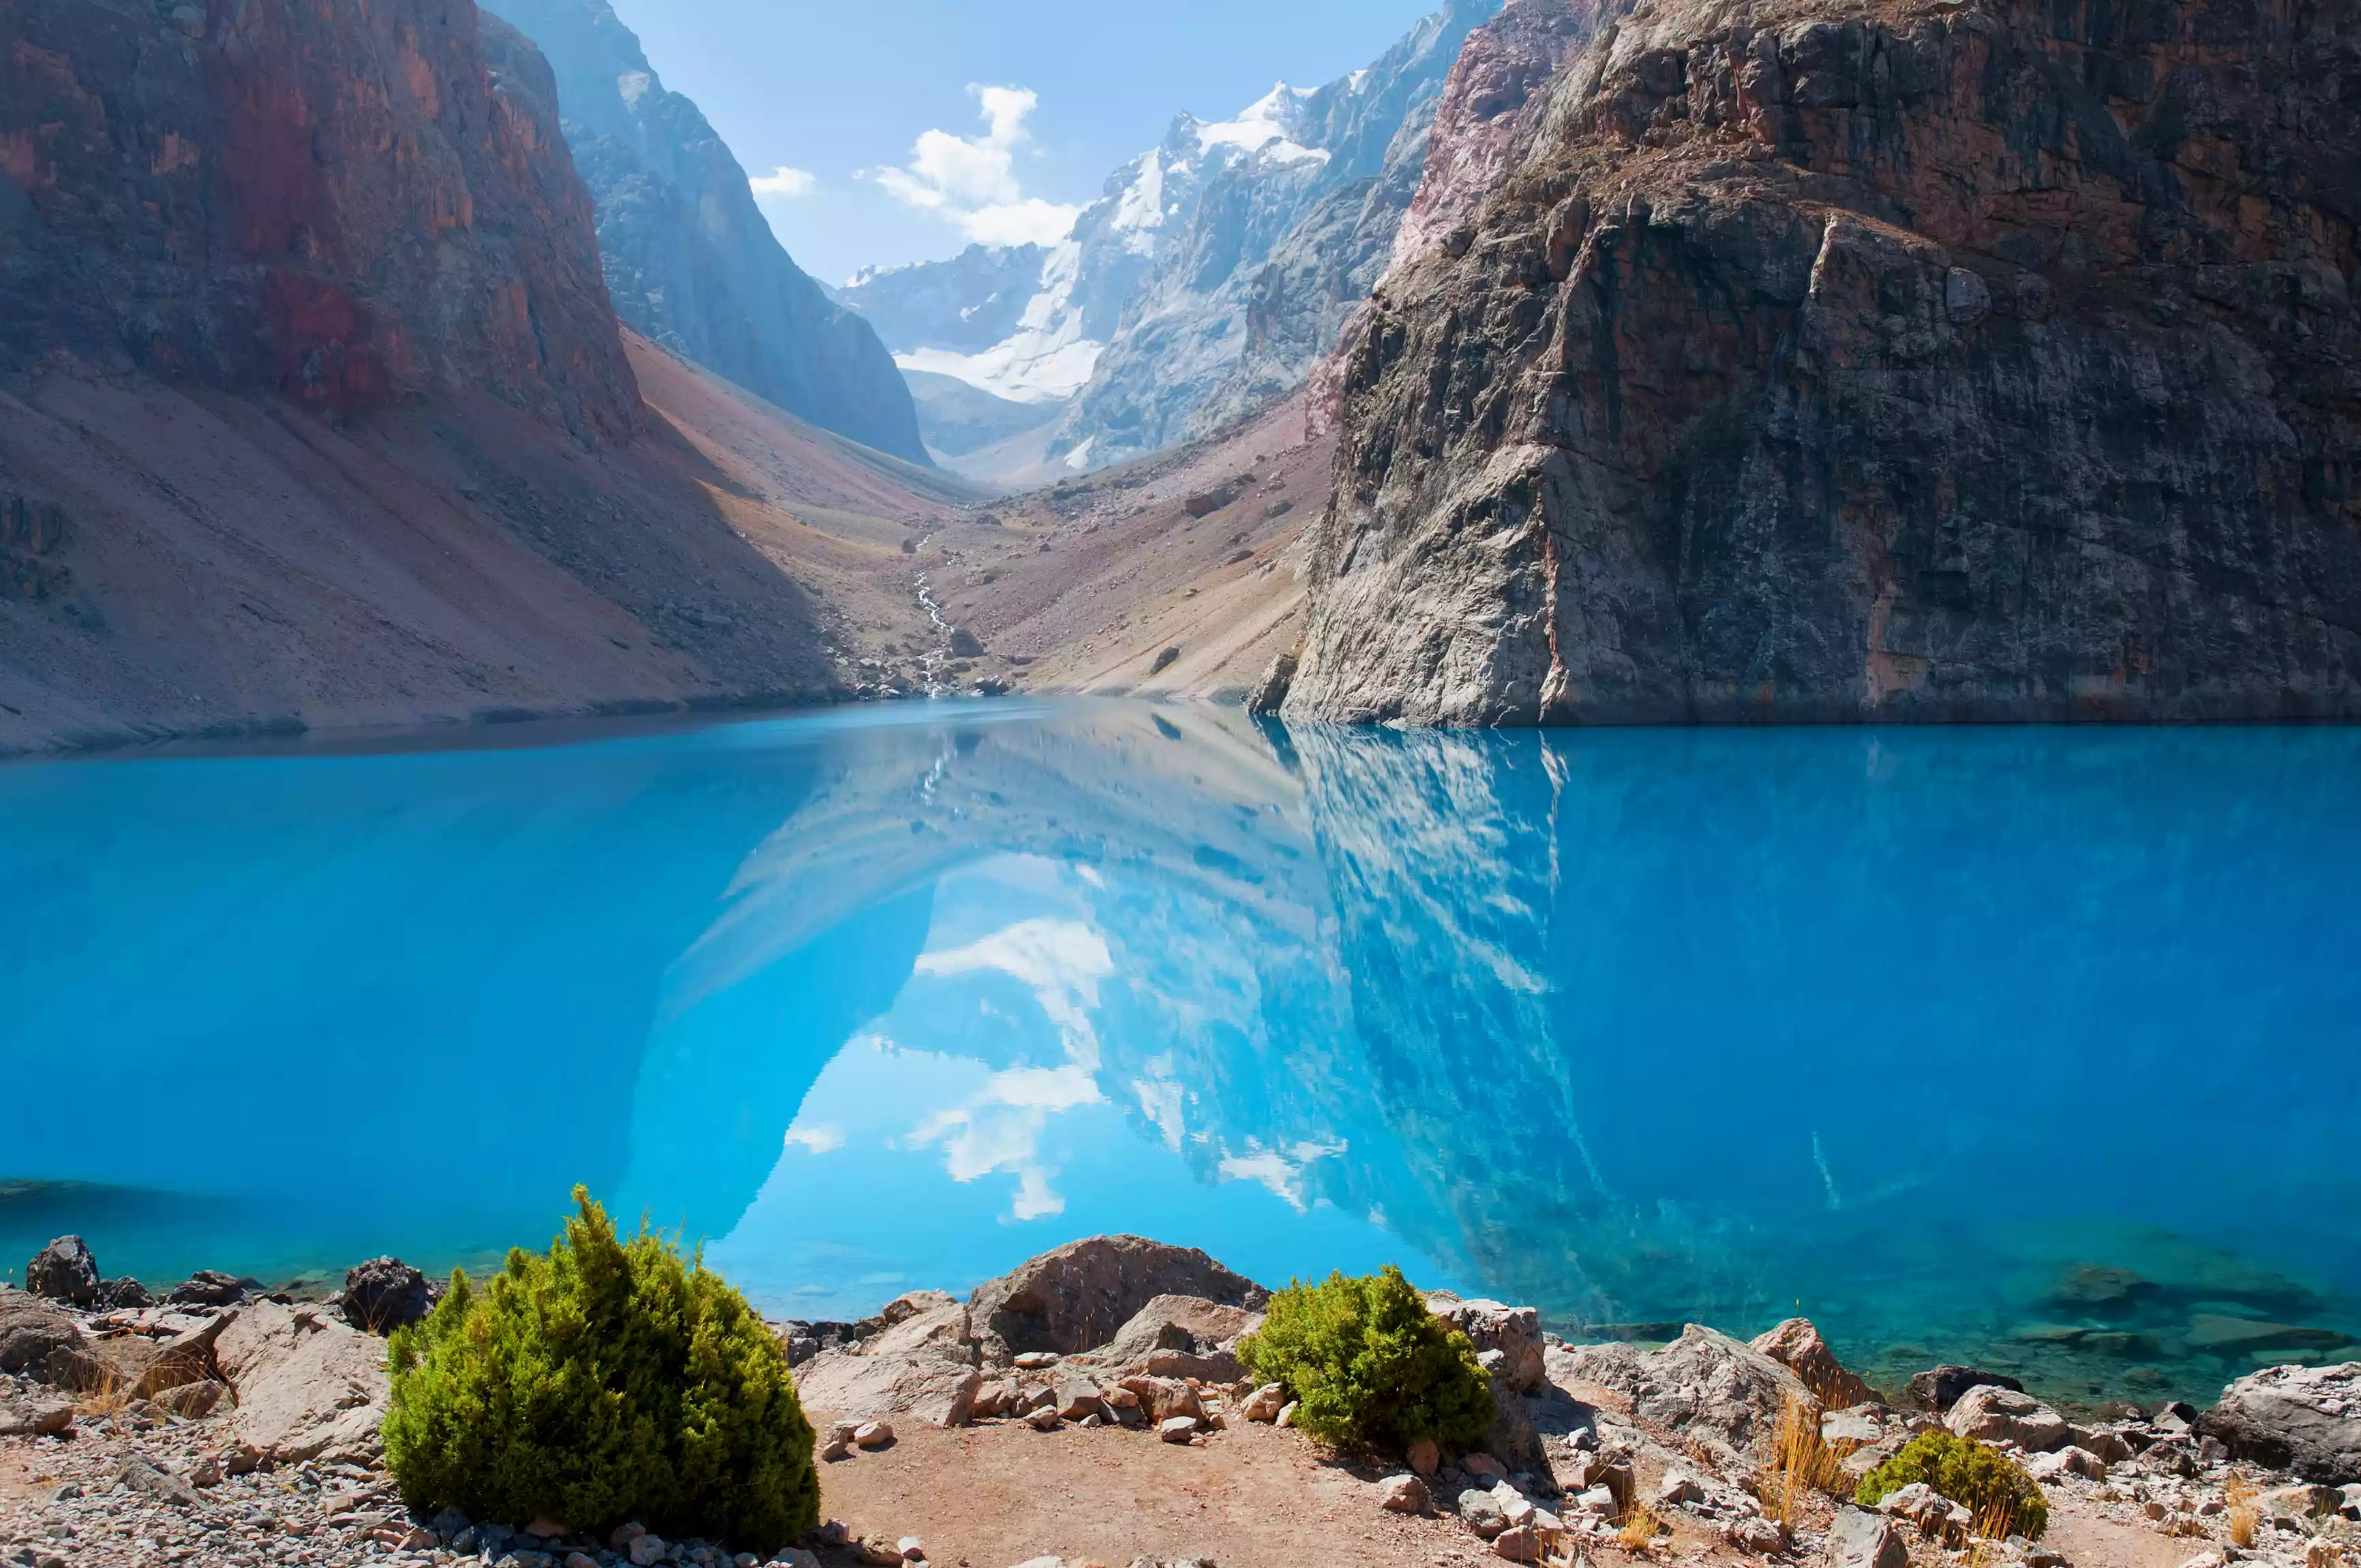 The clear blue waters of Iskanderkul in the Fann Mountains of Tajikistan